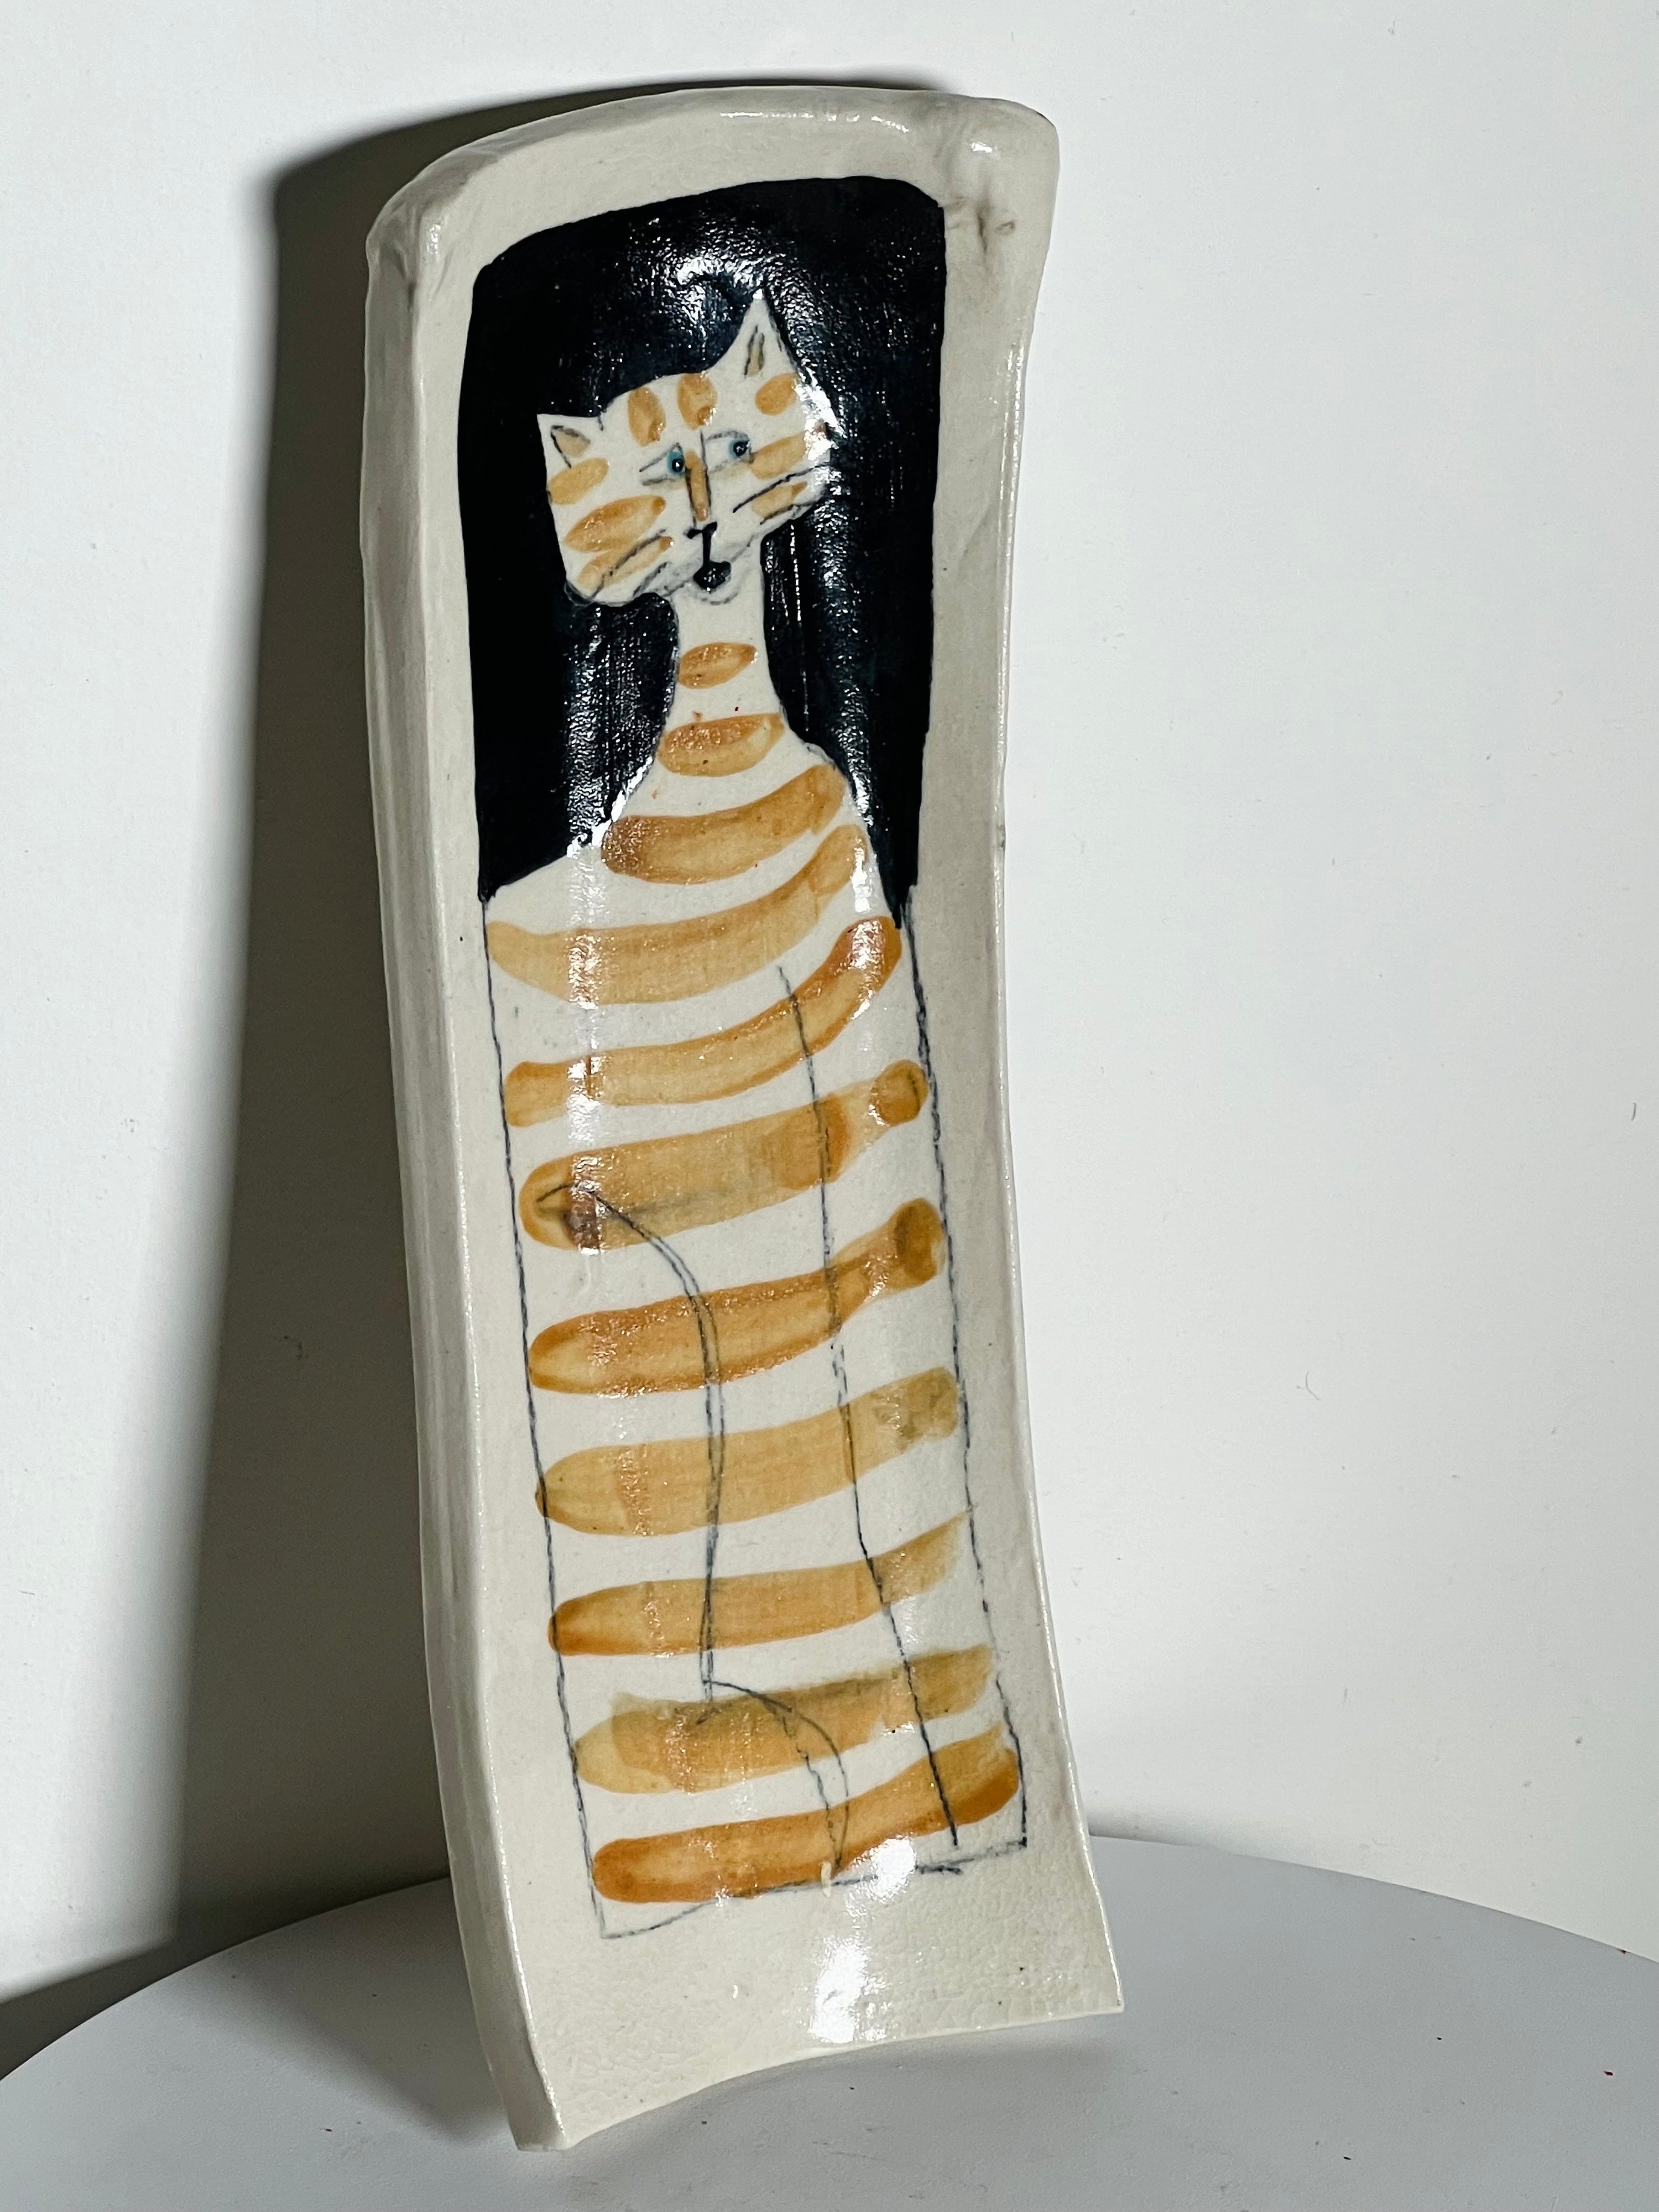 Folk Art Ceramic Cat Tray (Vintage)